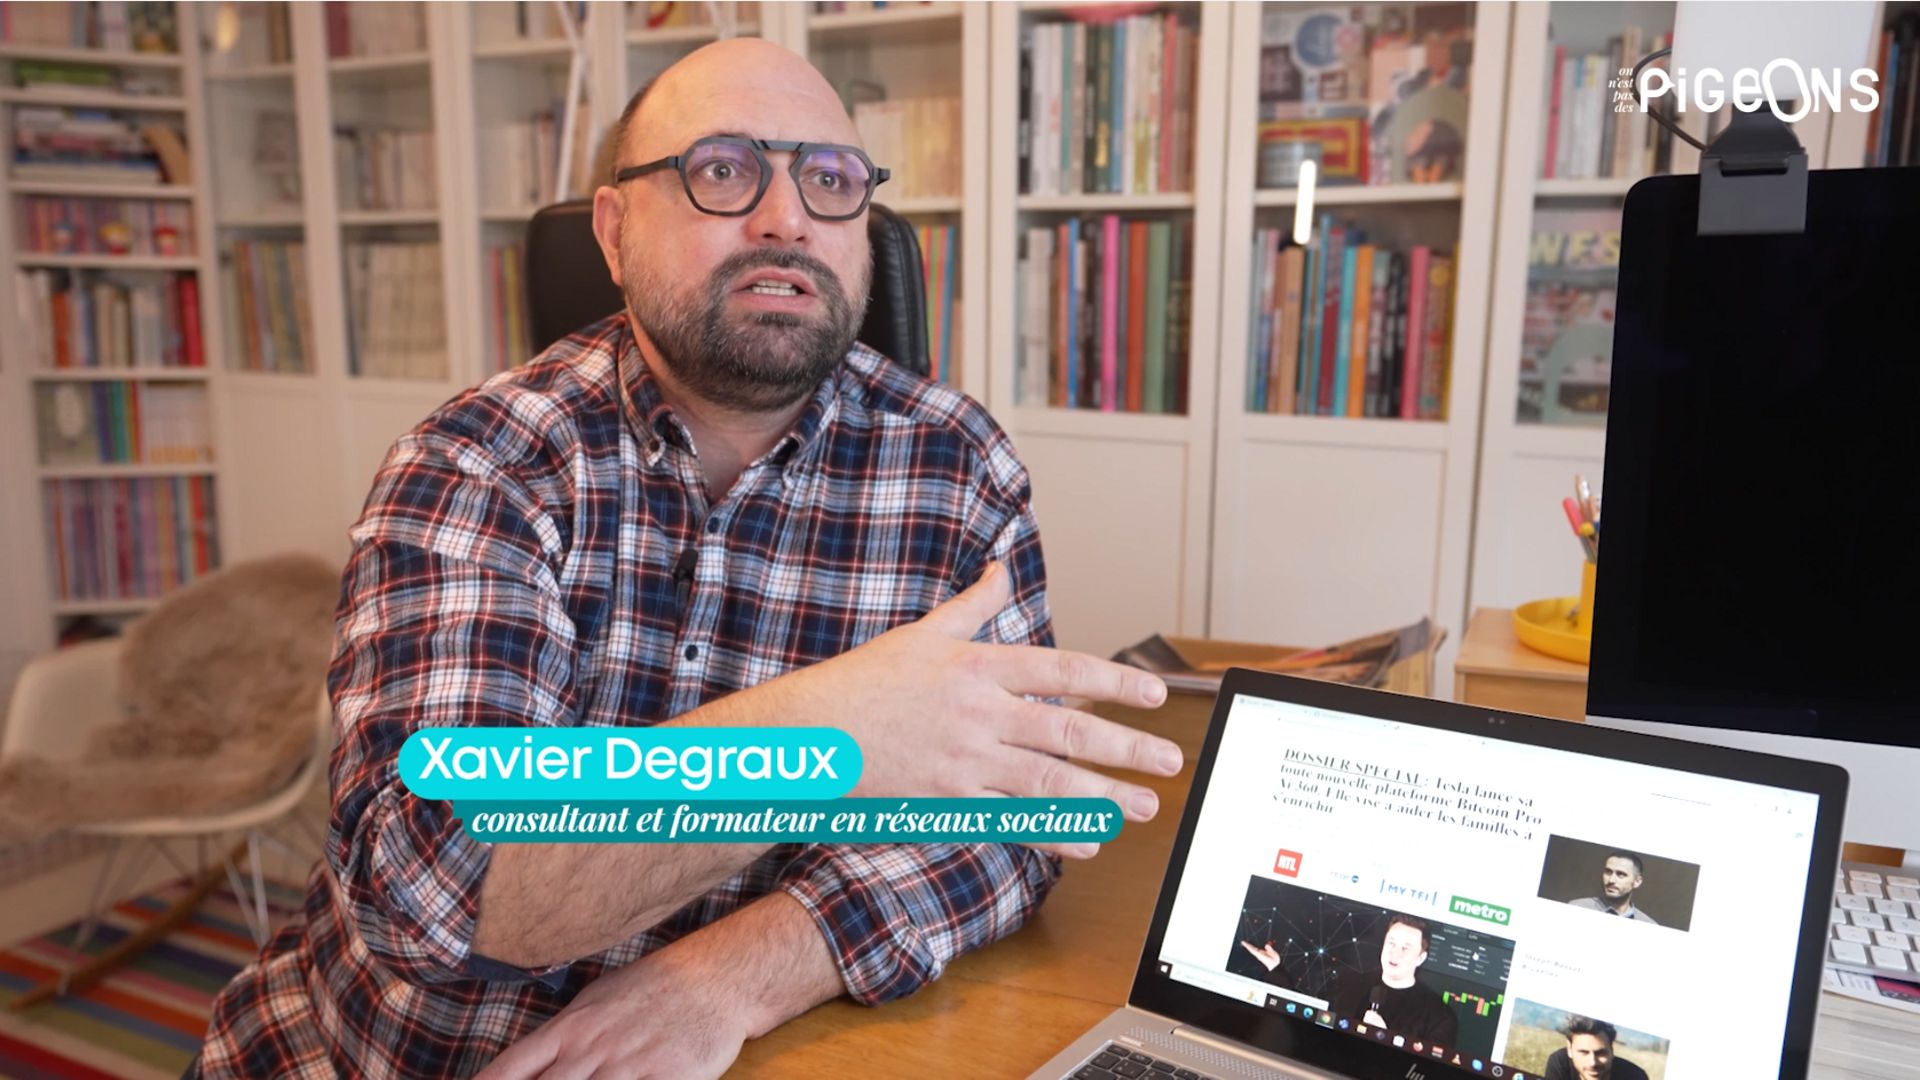 Xavier Degraux, consultant et formateur en réseaux sociaux